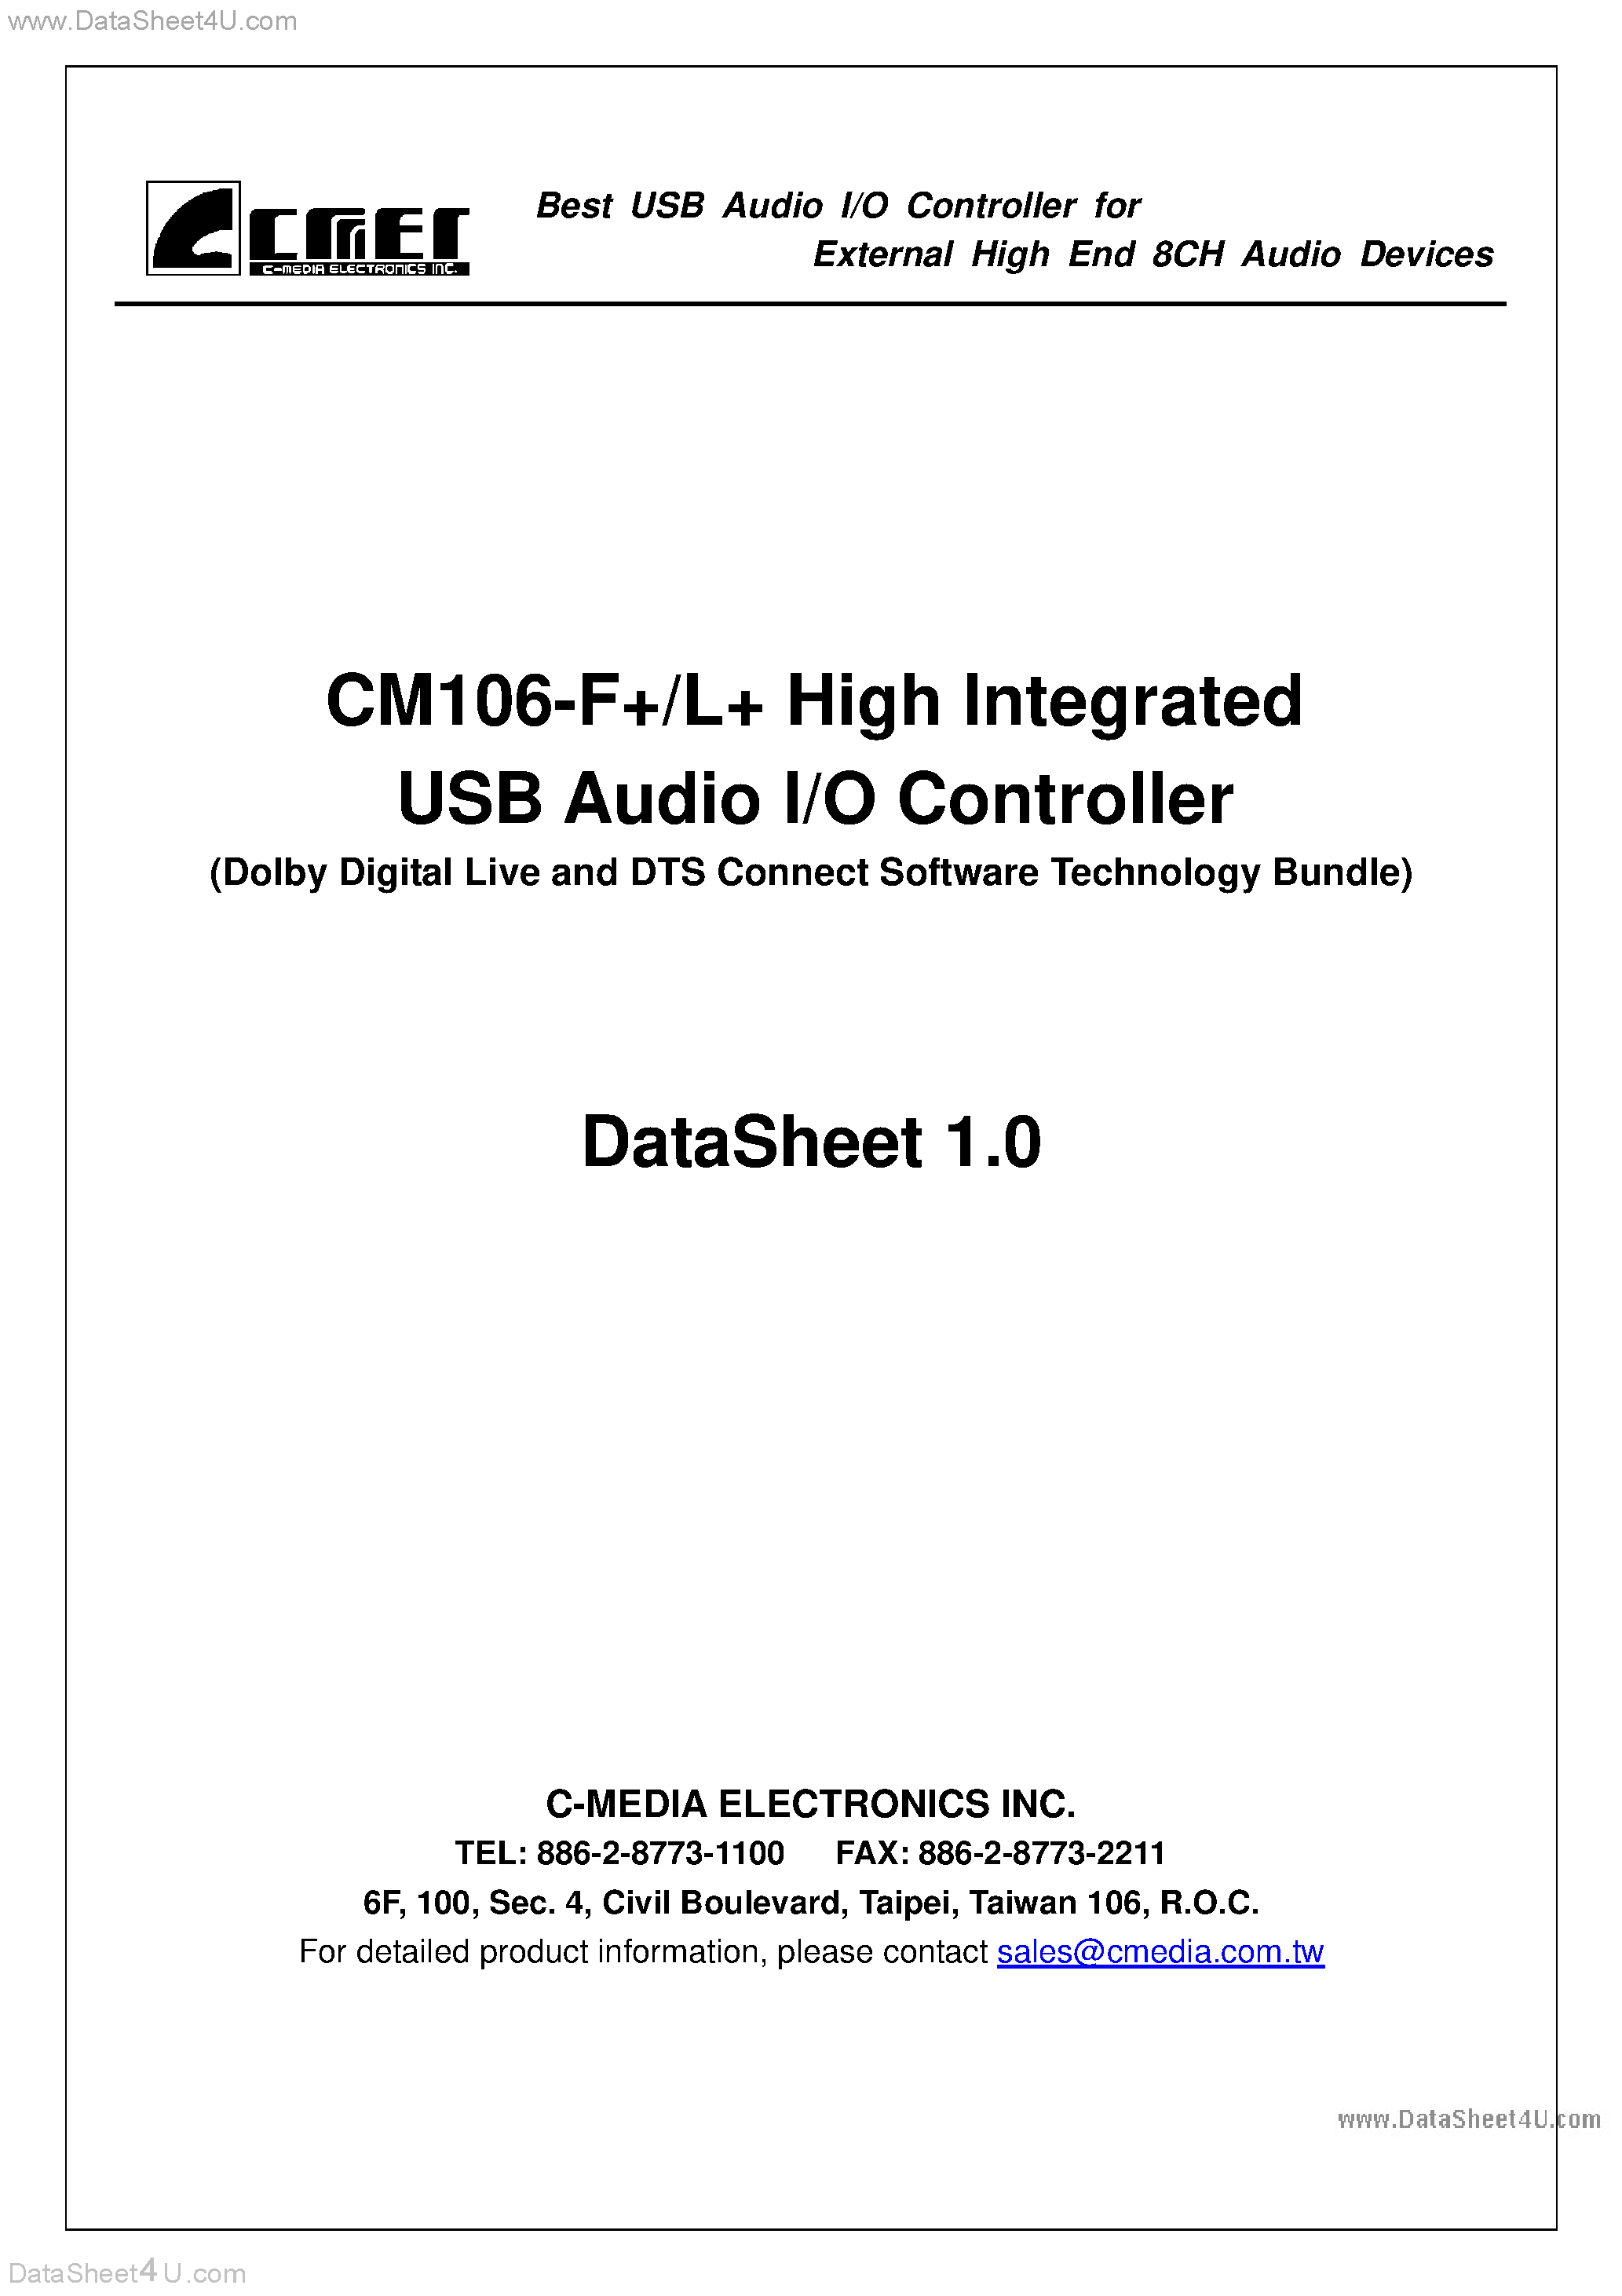 Даташит CM106-F+ - USB Audio I/O Controller страница 1